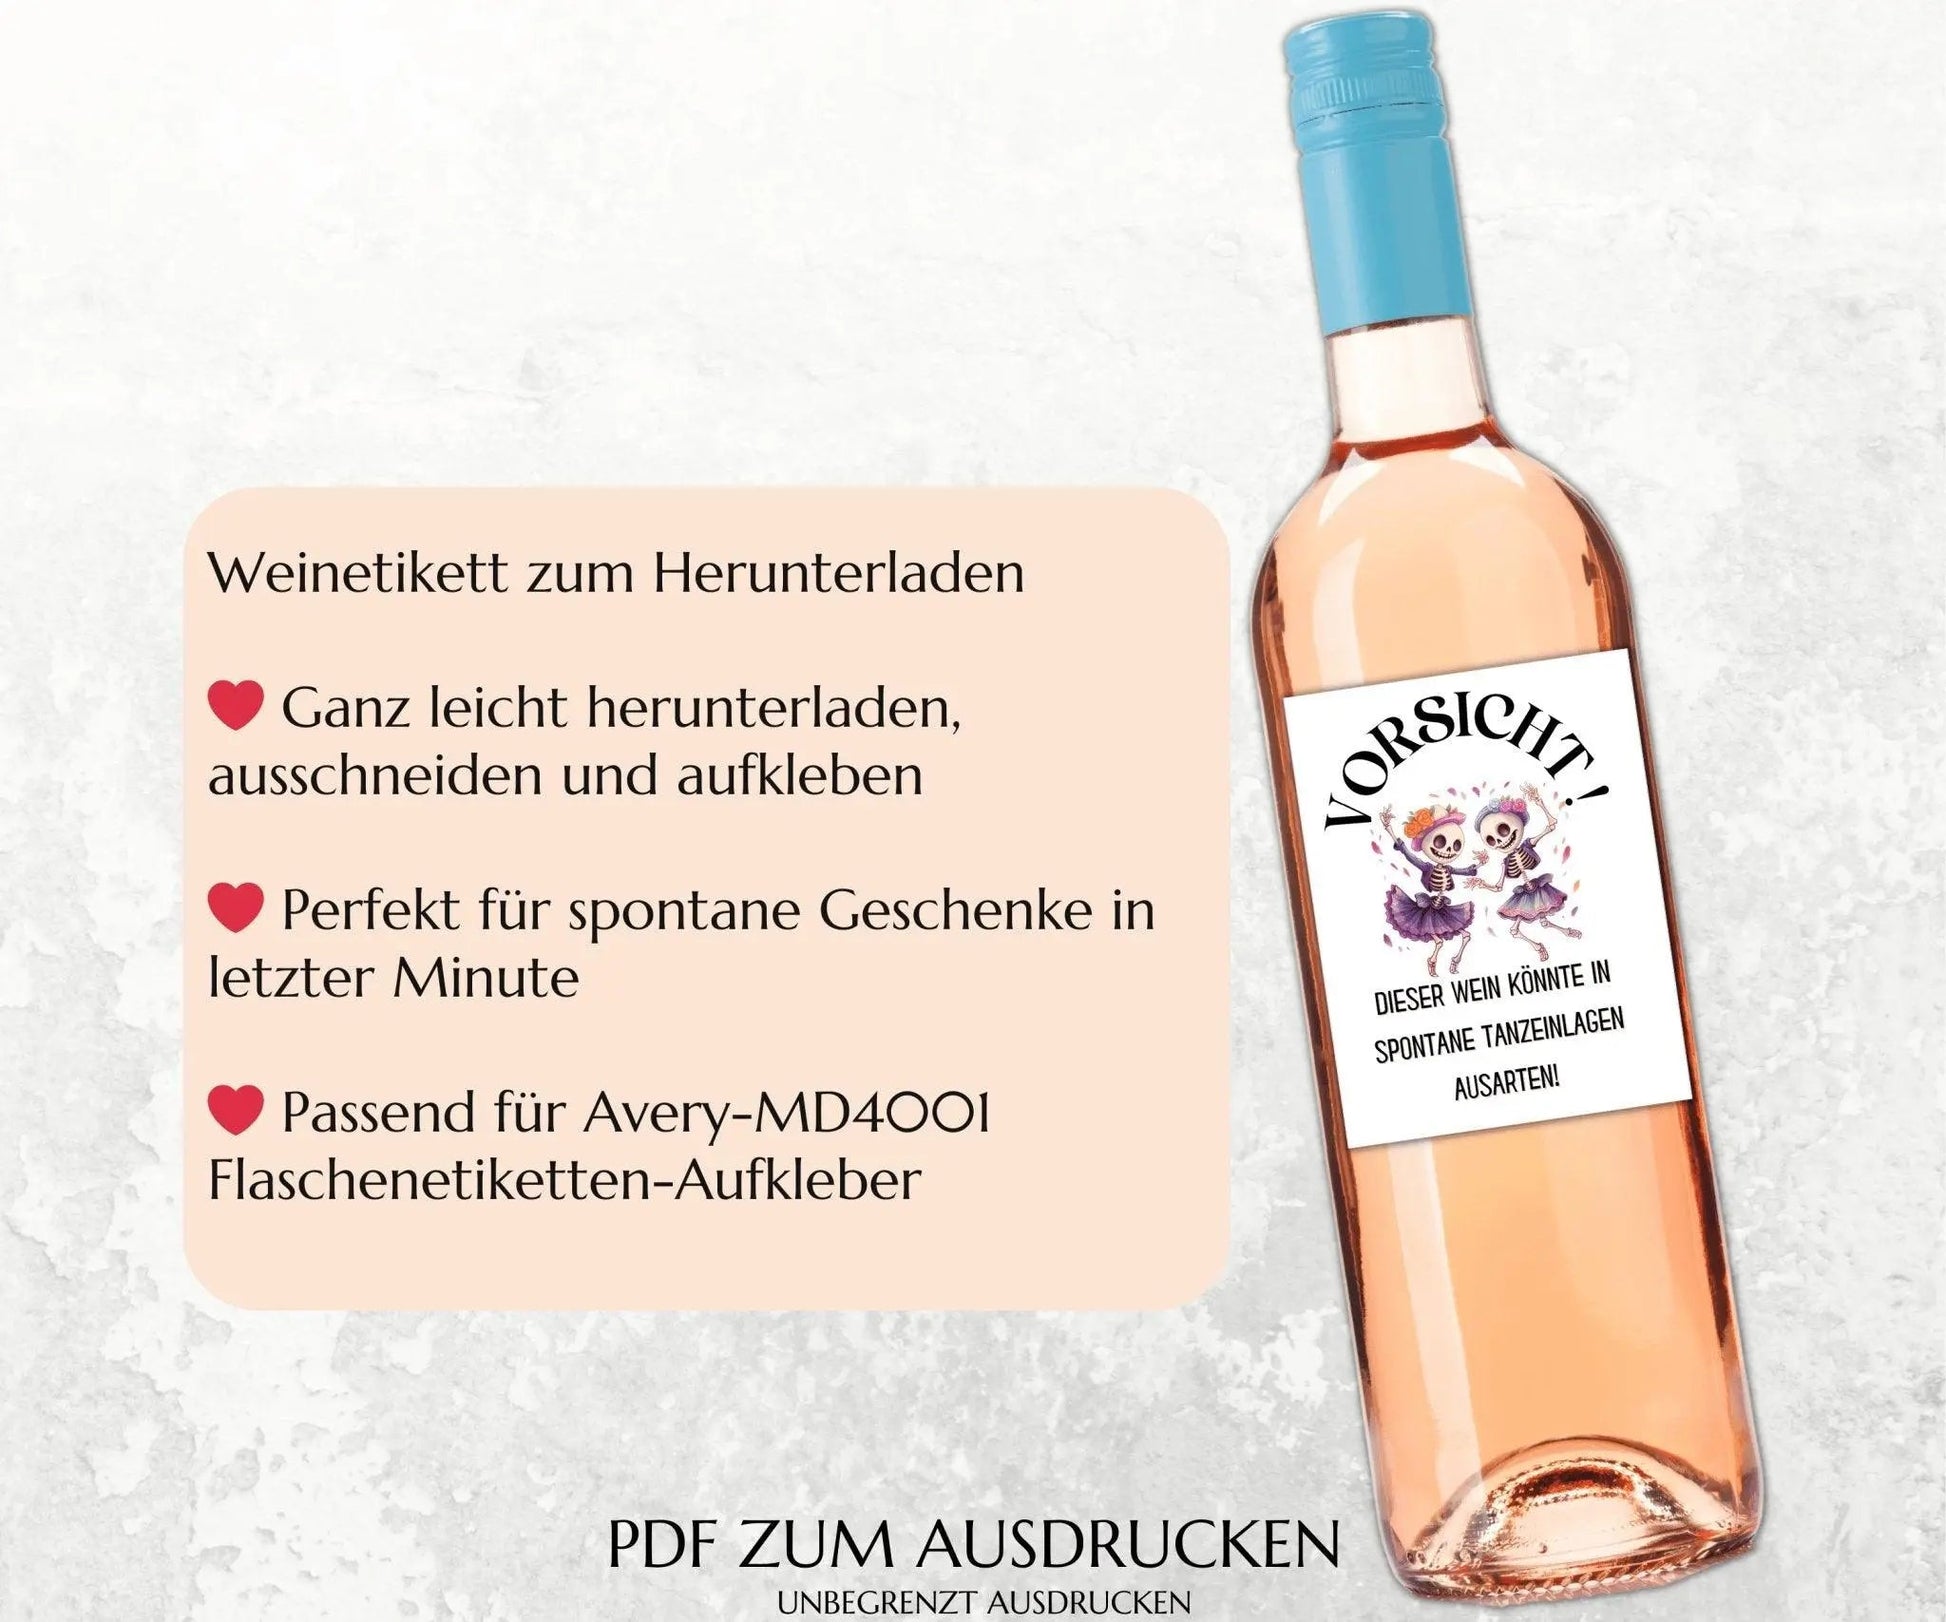 Vorsicht, dieser Wein könnte in spontane Tanzeinlagen ausarten - Spruch Weinetikett zum Ausdrucken - JSKDesignStudio.de